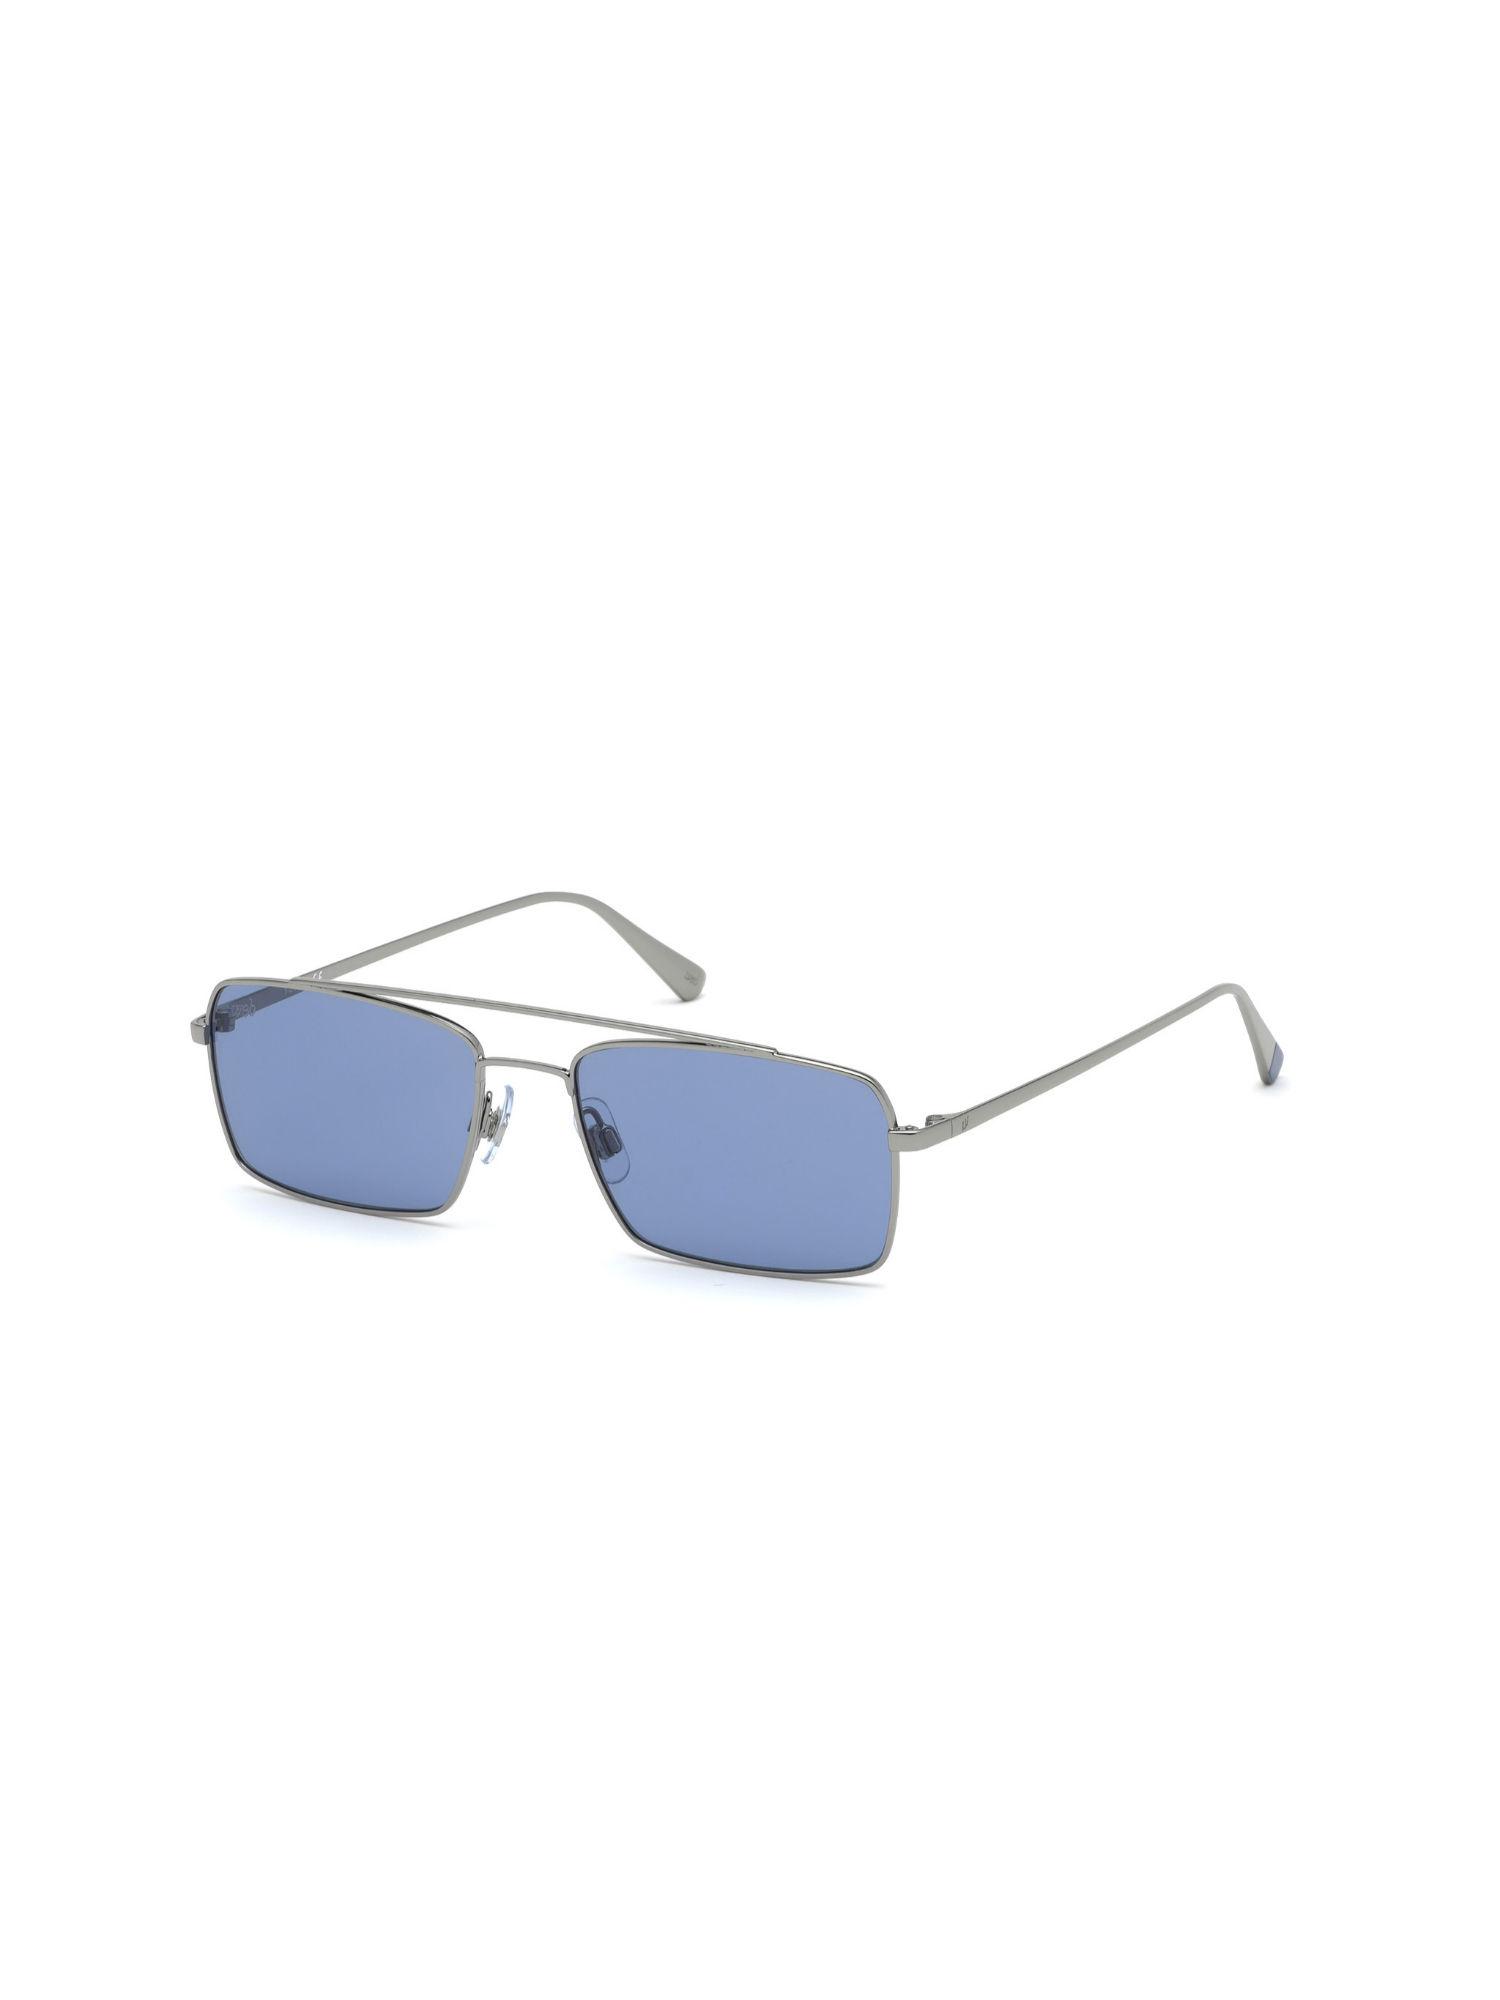 blue plastic men sunglasses we0267 54 14v